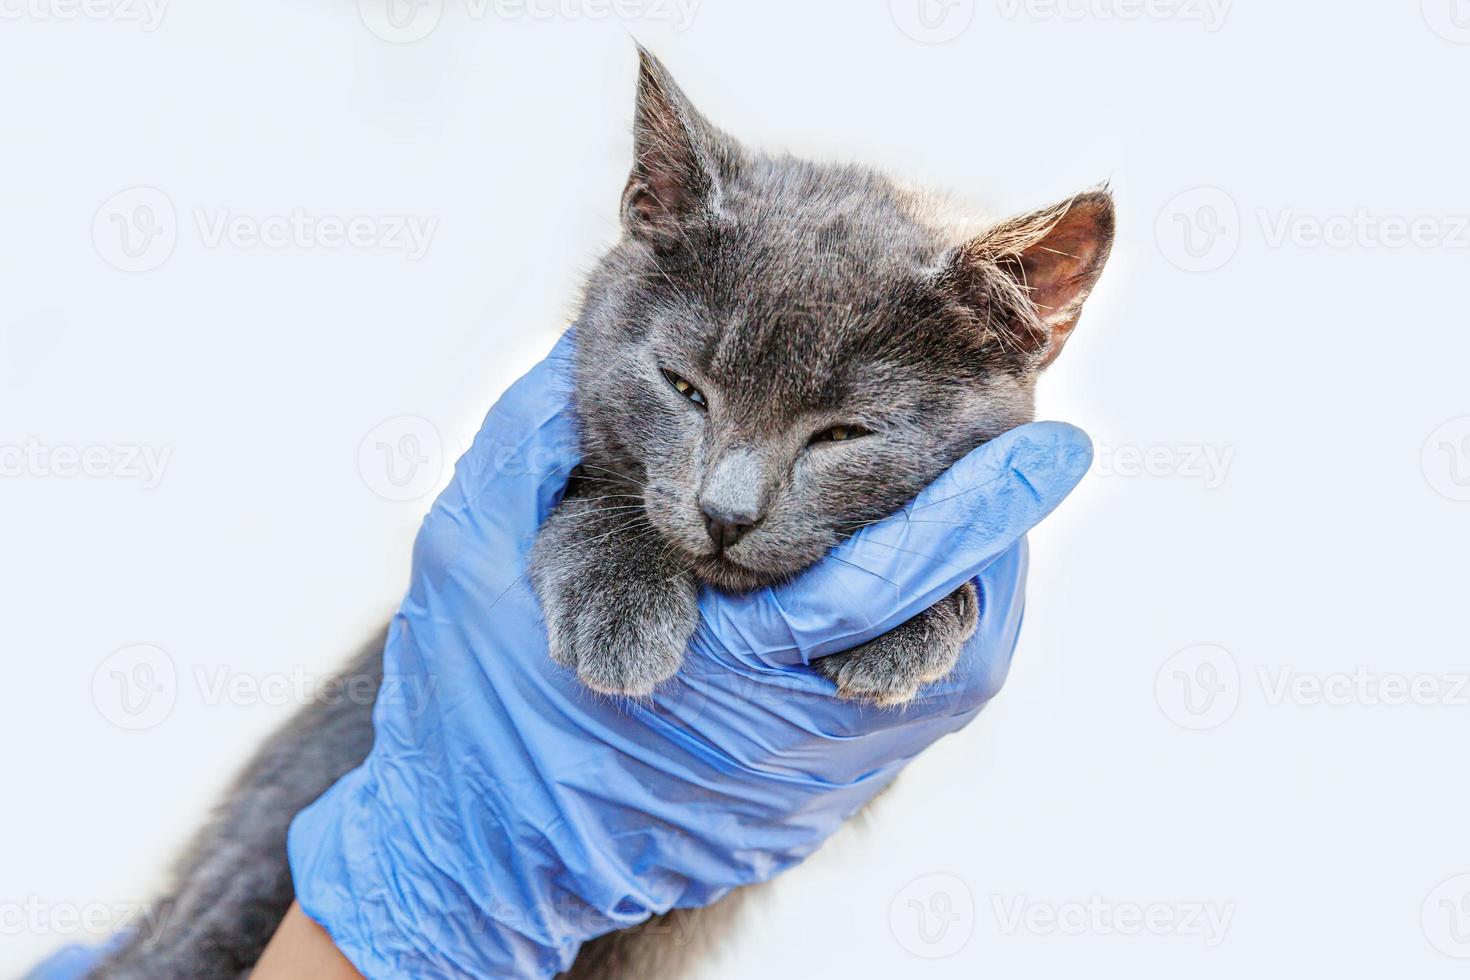 dierenarts arts houden en onderzoeken van kleine grijze kitten geïsoleerd op een witte achtergrond. close-up van een jonge kat die wordt gecontroleerd door de handen van de dierenarts. dierenverzorging en huisdierbehandelingsconcept. foto